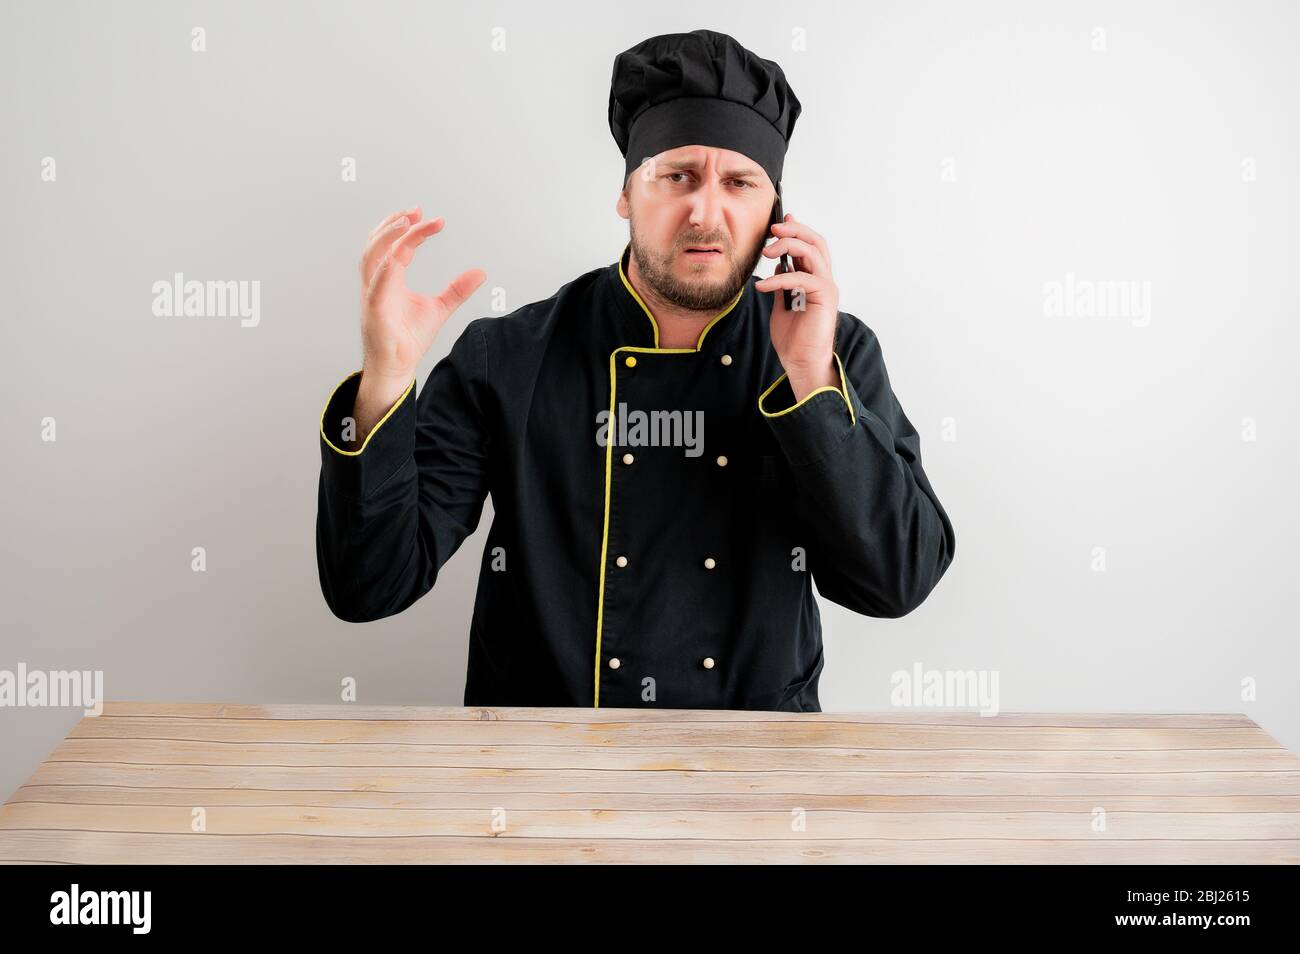 Porträt des jungen männlichen Koch in schwarzer Uniform mit braunen Haaren,  missfiel Gesicht und Gesten und sprechen auf Handy, posiert auf einem  weißen isoliert backgr Stockfotografie - Alamy